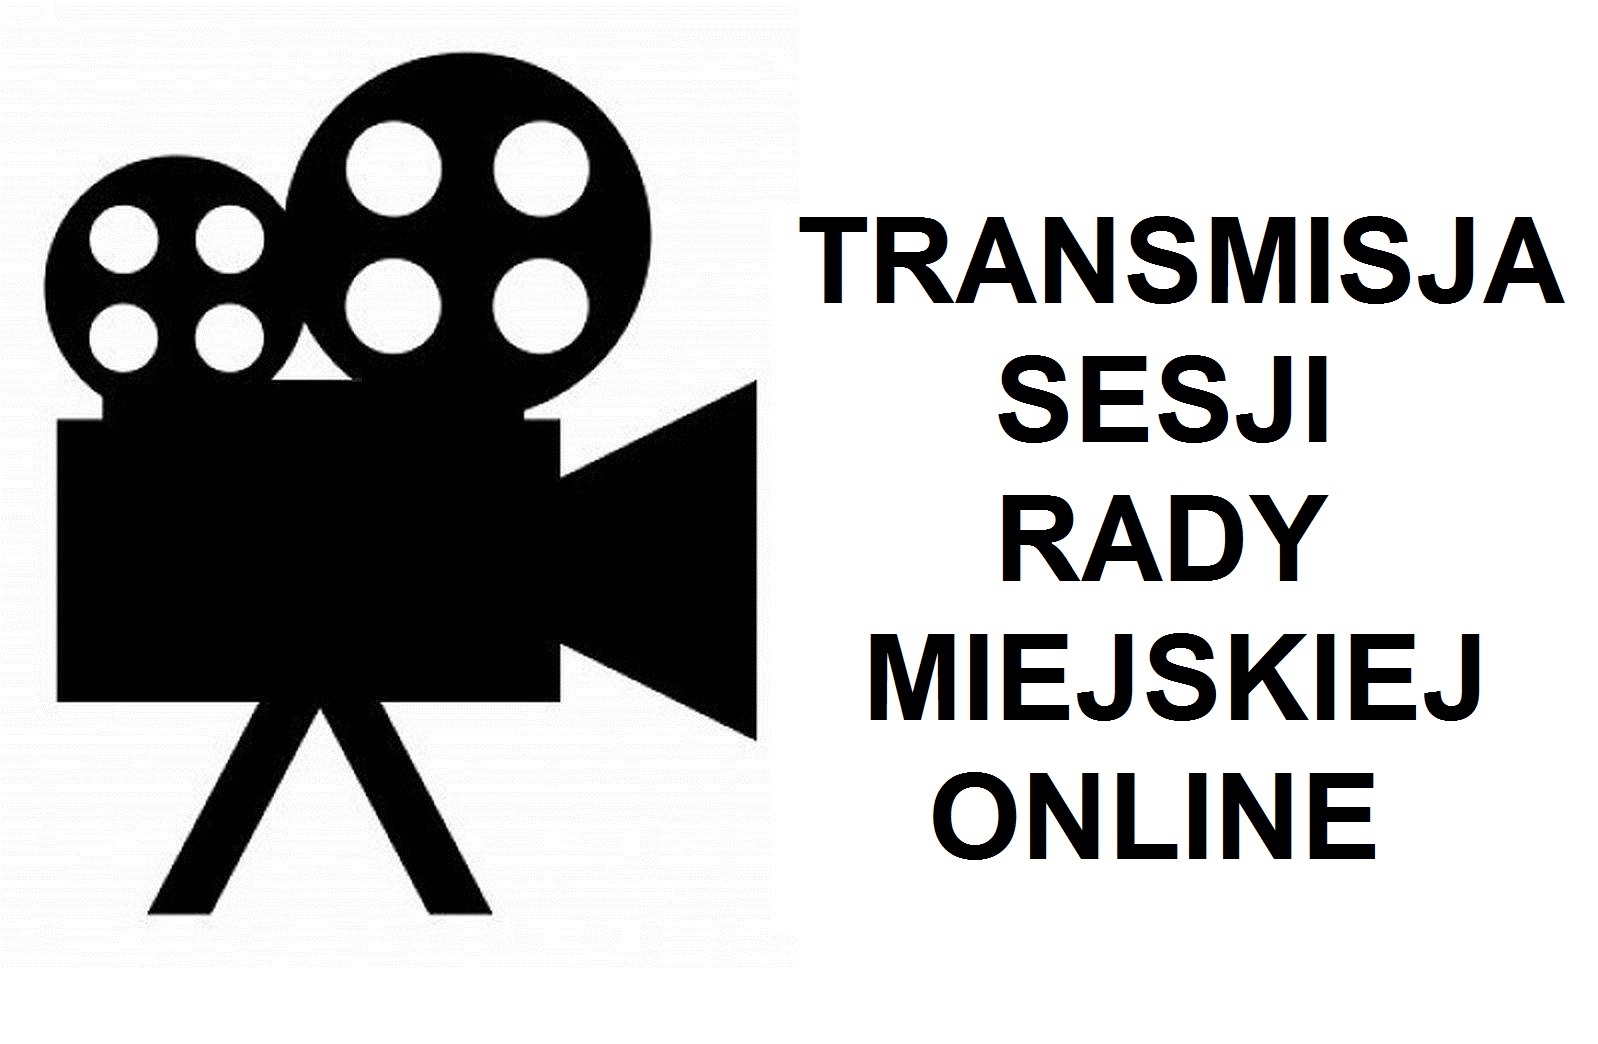 XXXI Sesja Rady Miejskiej VIII kadencji - Transmisja Online